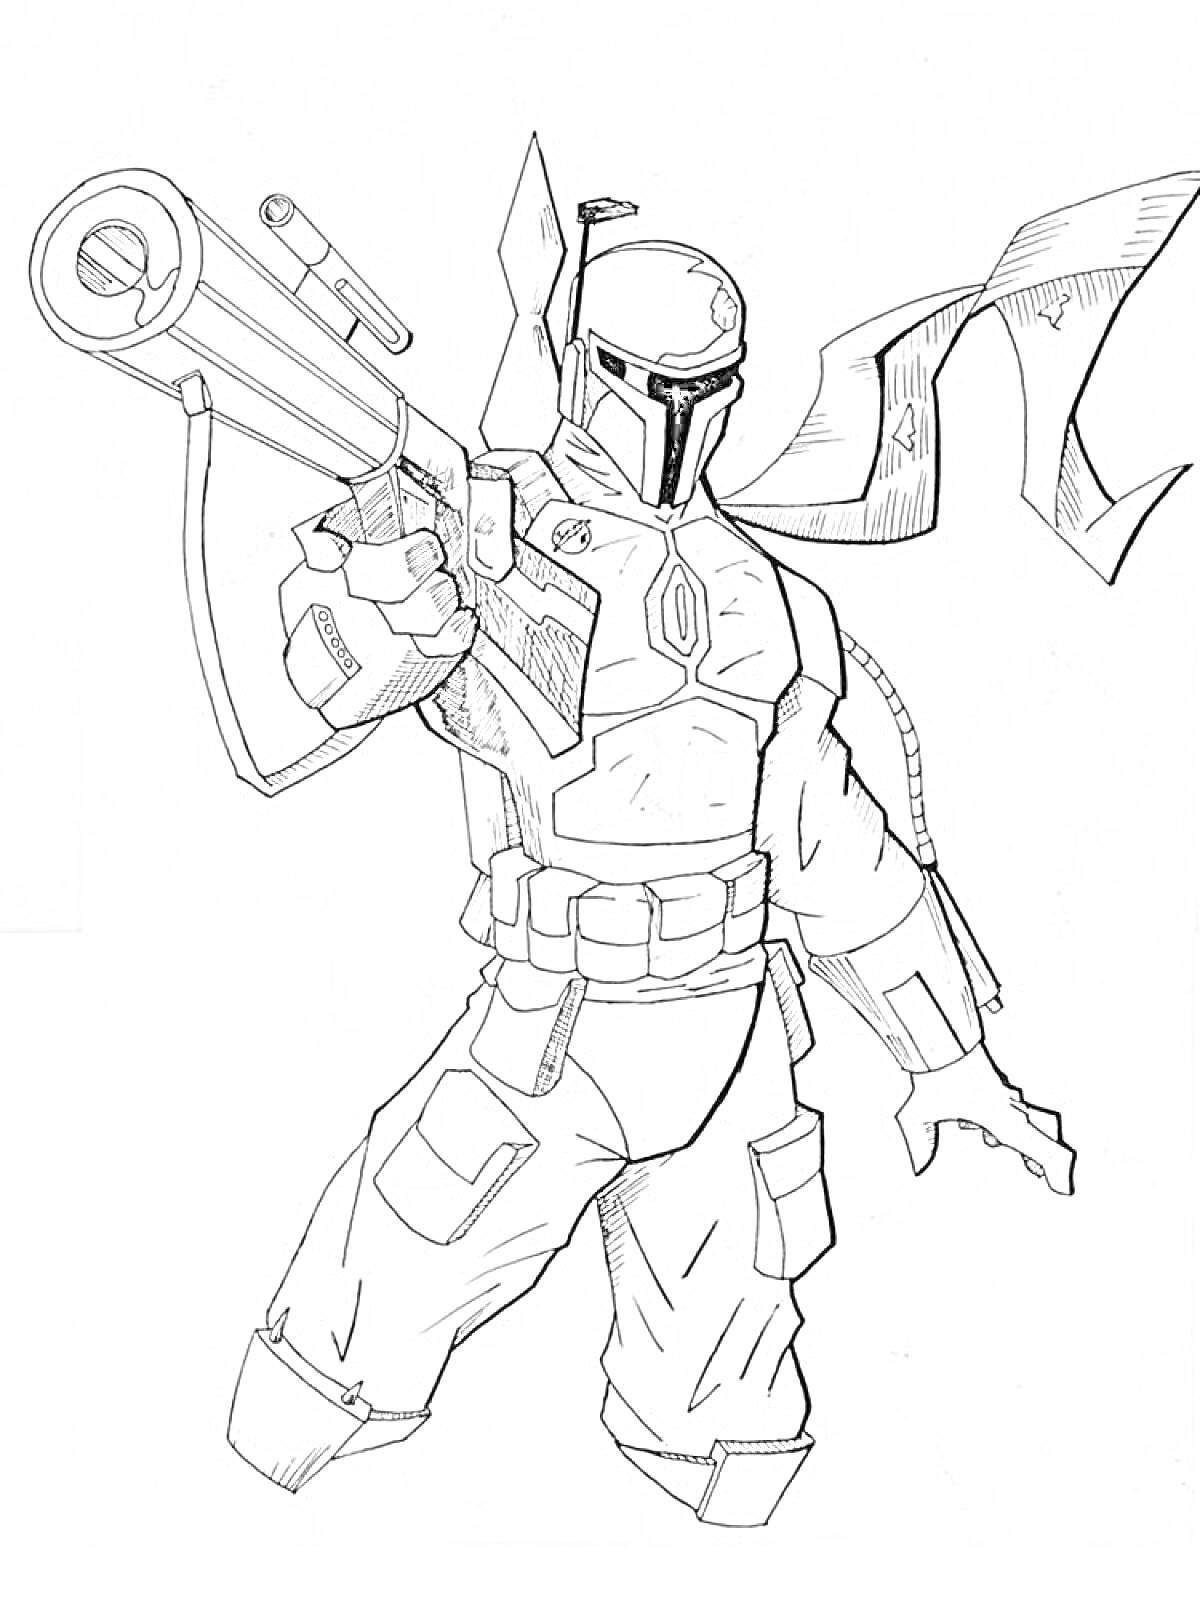 Раскраска Воин в шлеме и броне с оружием и развевающимся накидкой